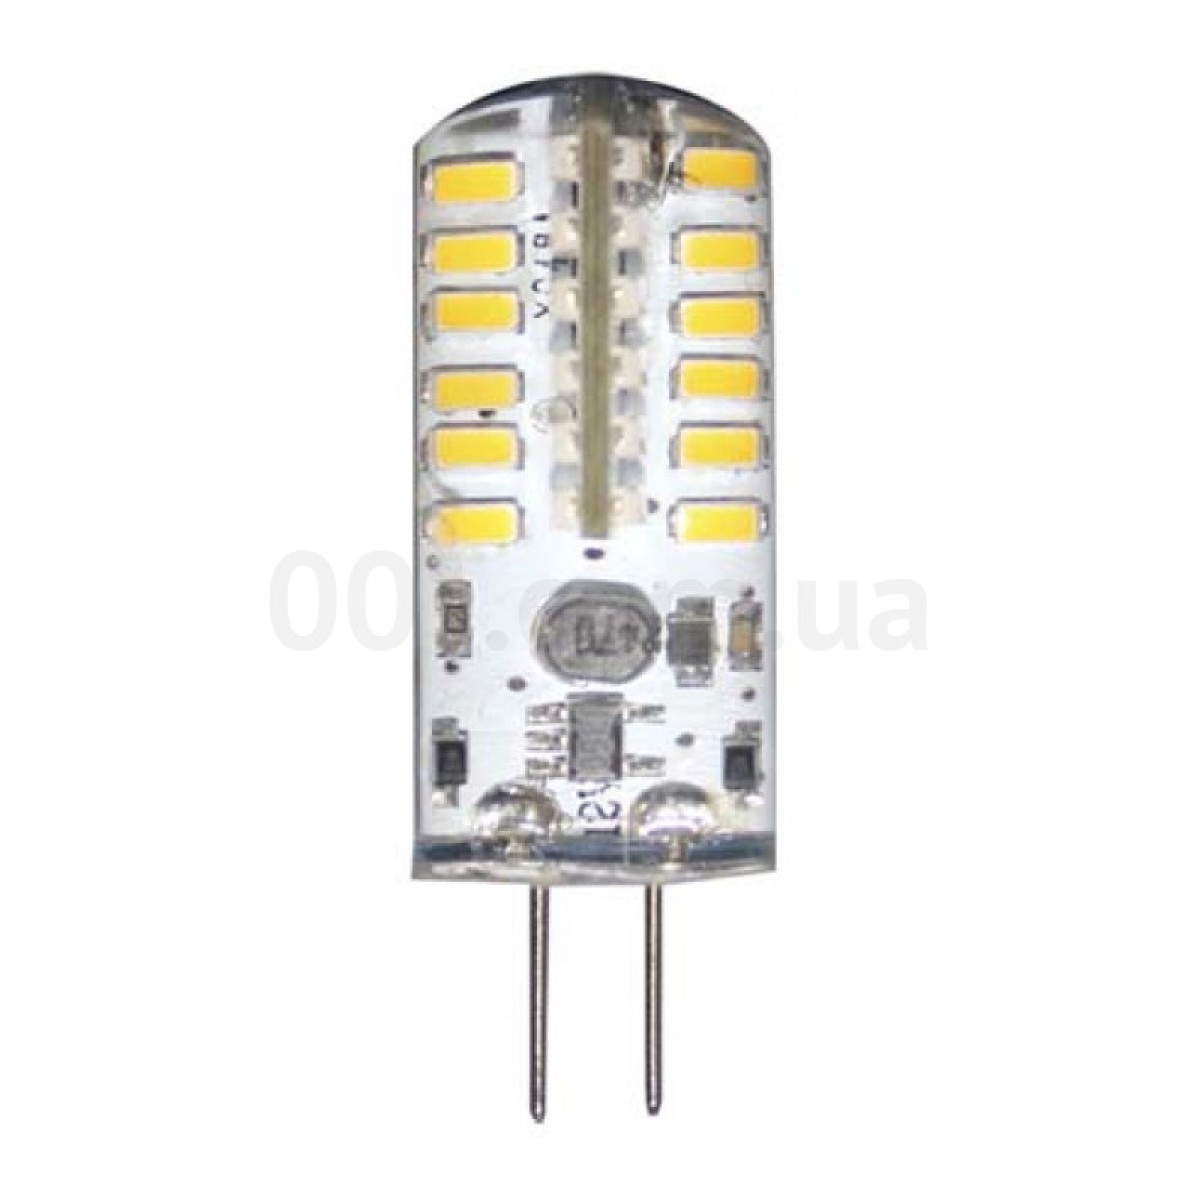 Светодиодная лампа LB-422 (капсула) 12В AC/DC 3Вт 4000K G4, Feron 256_256.jpg